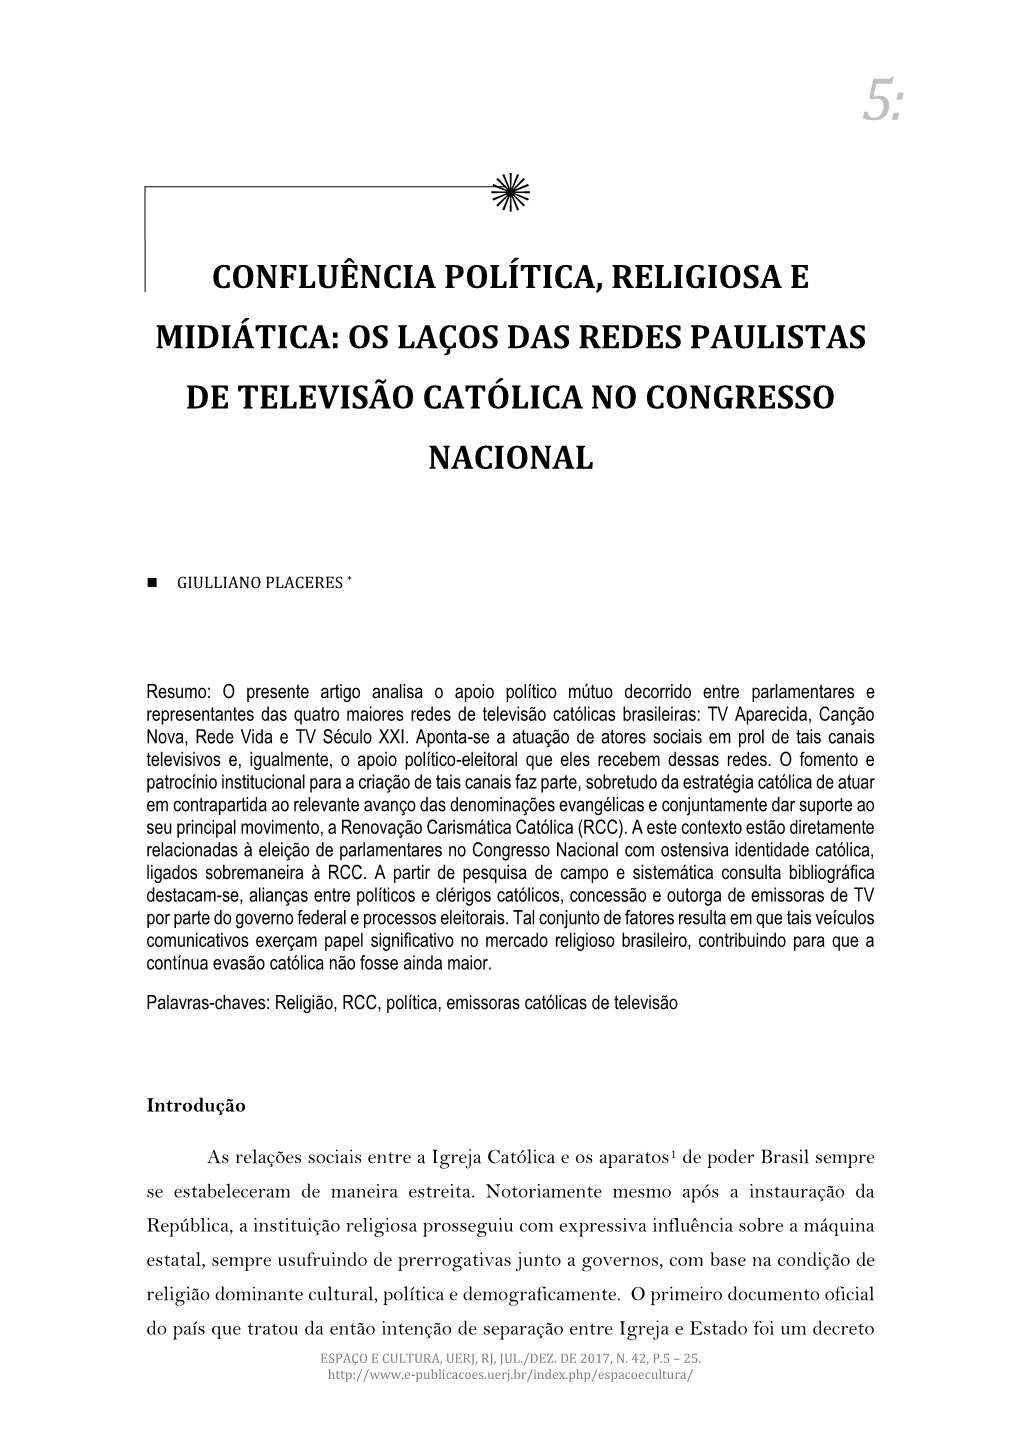 Os Laços Das Redes Paulistas De Televisão Católica No Congresso Nacional